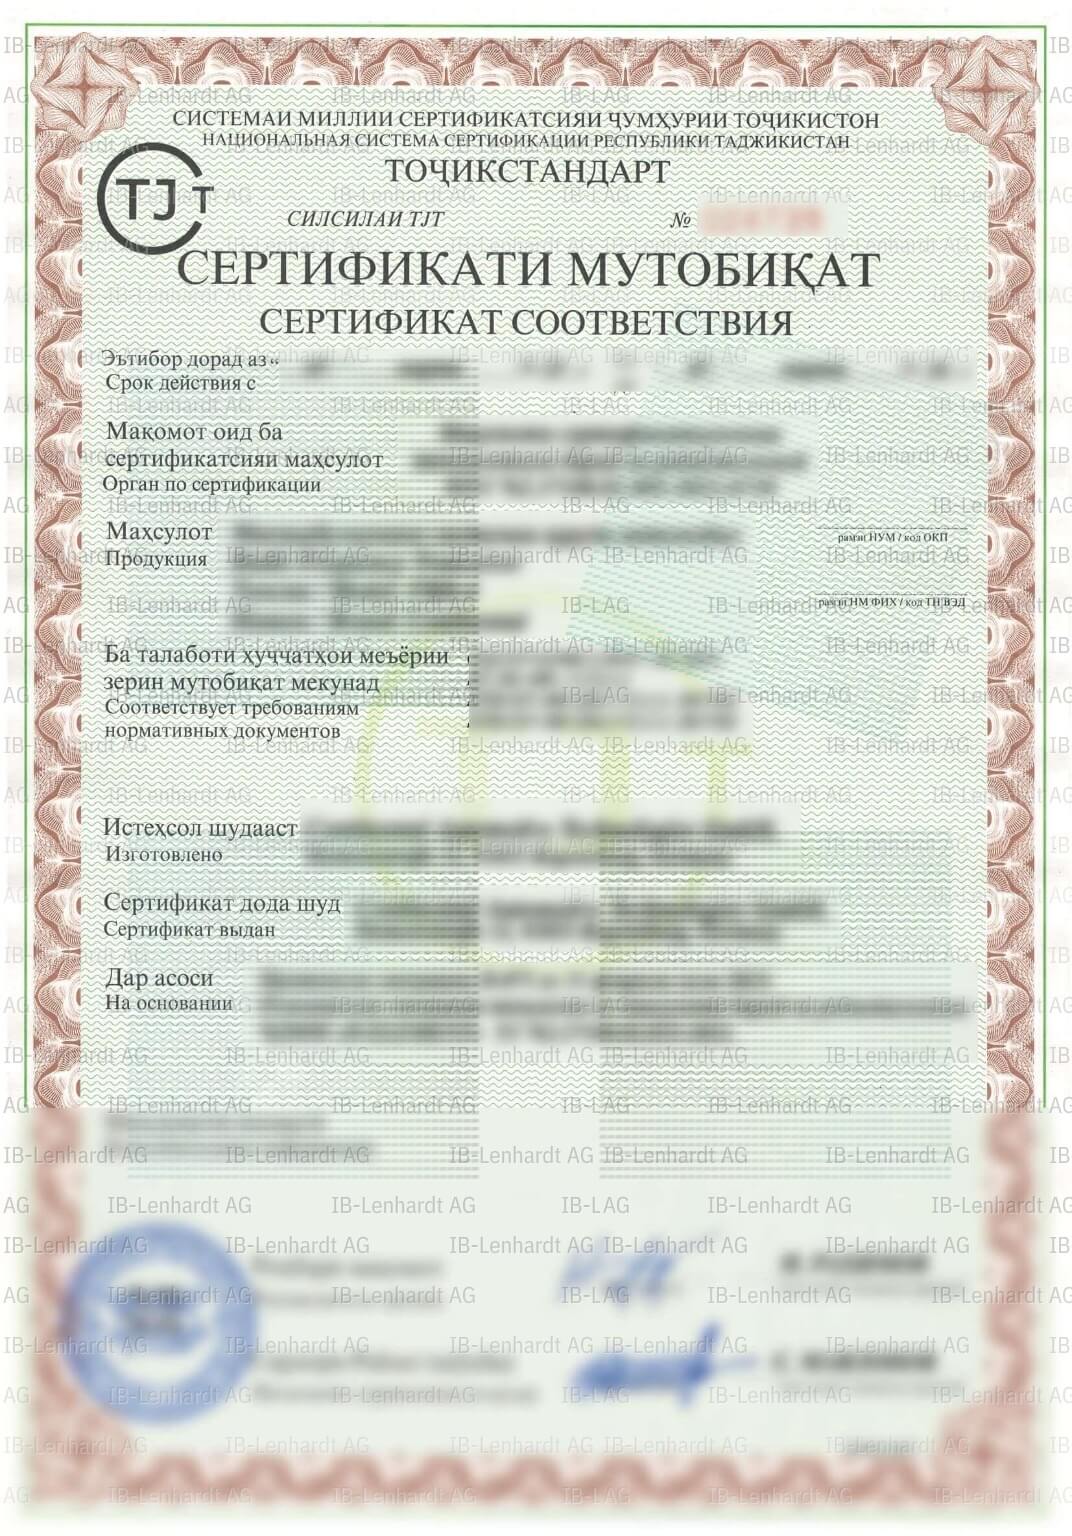 Certificate example Tajikistan